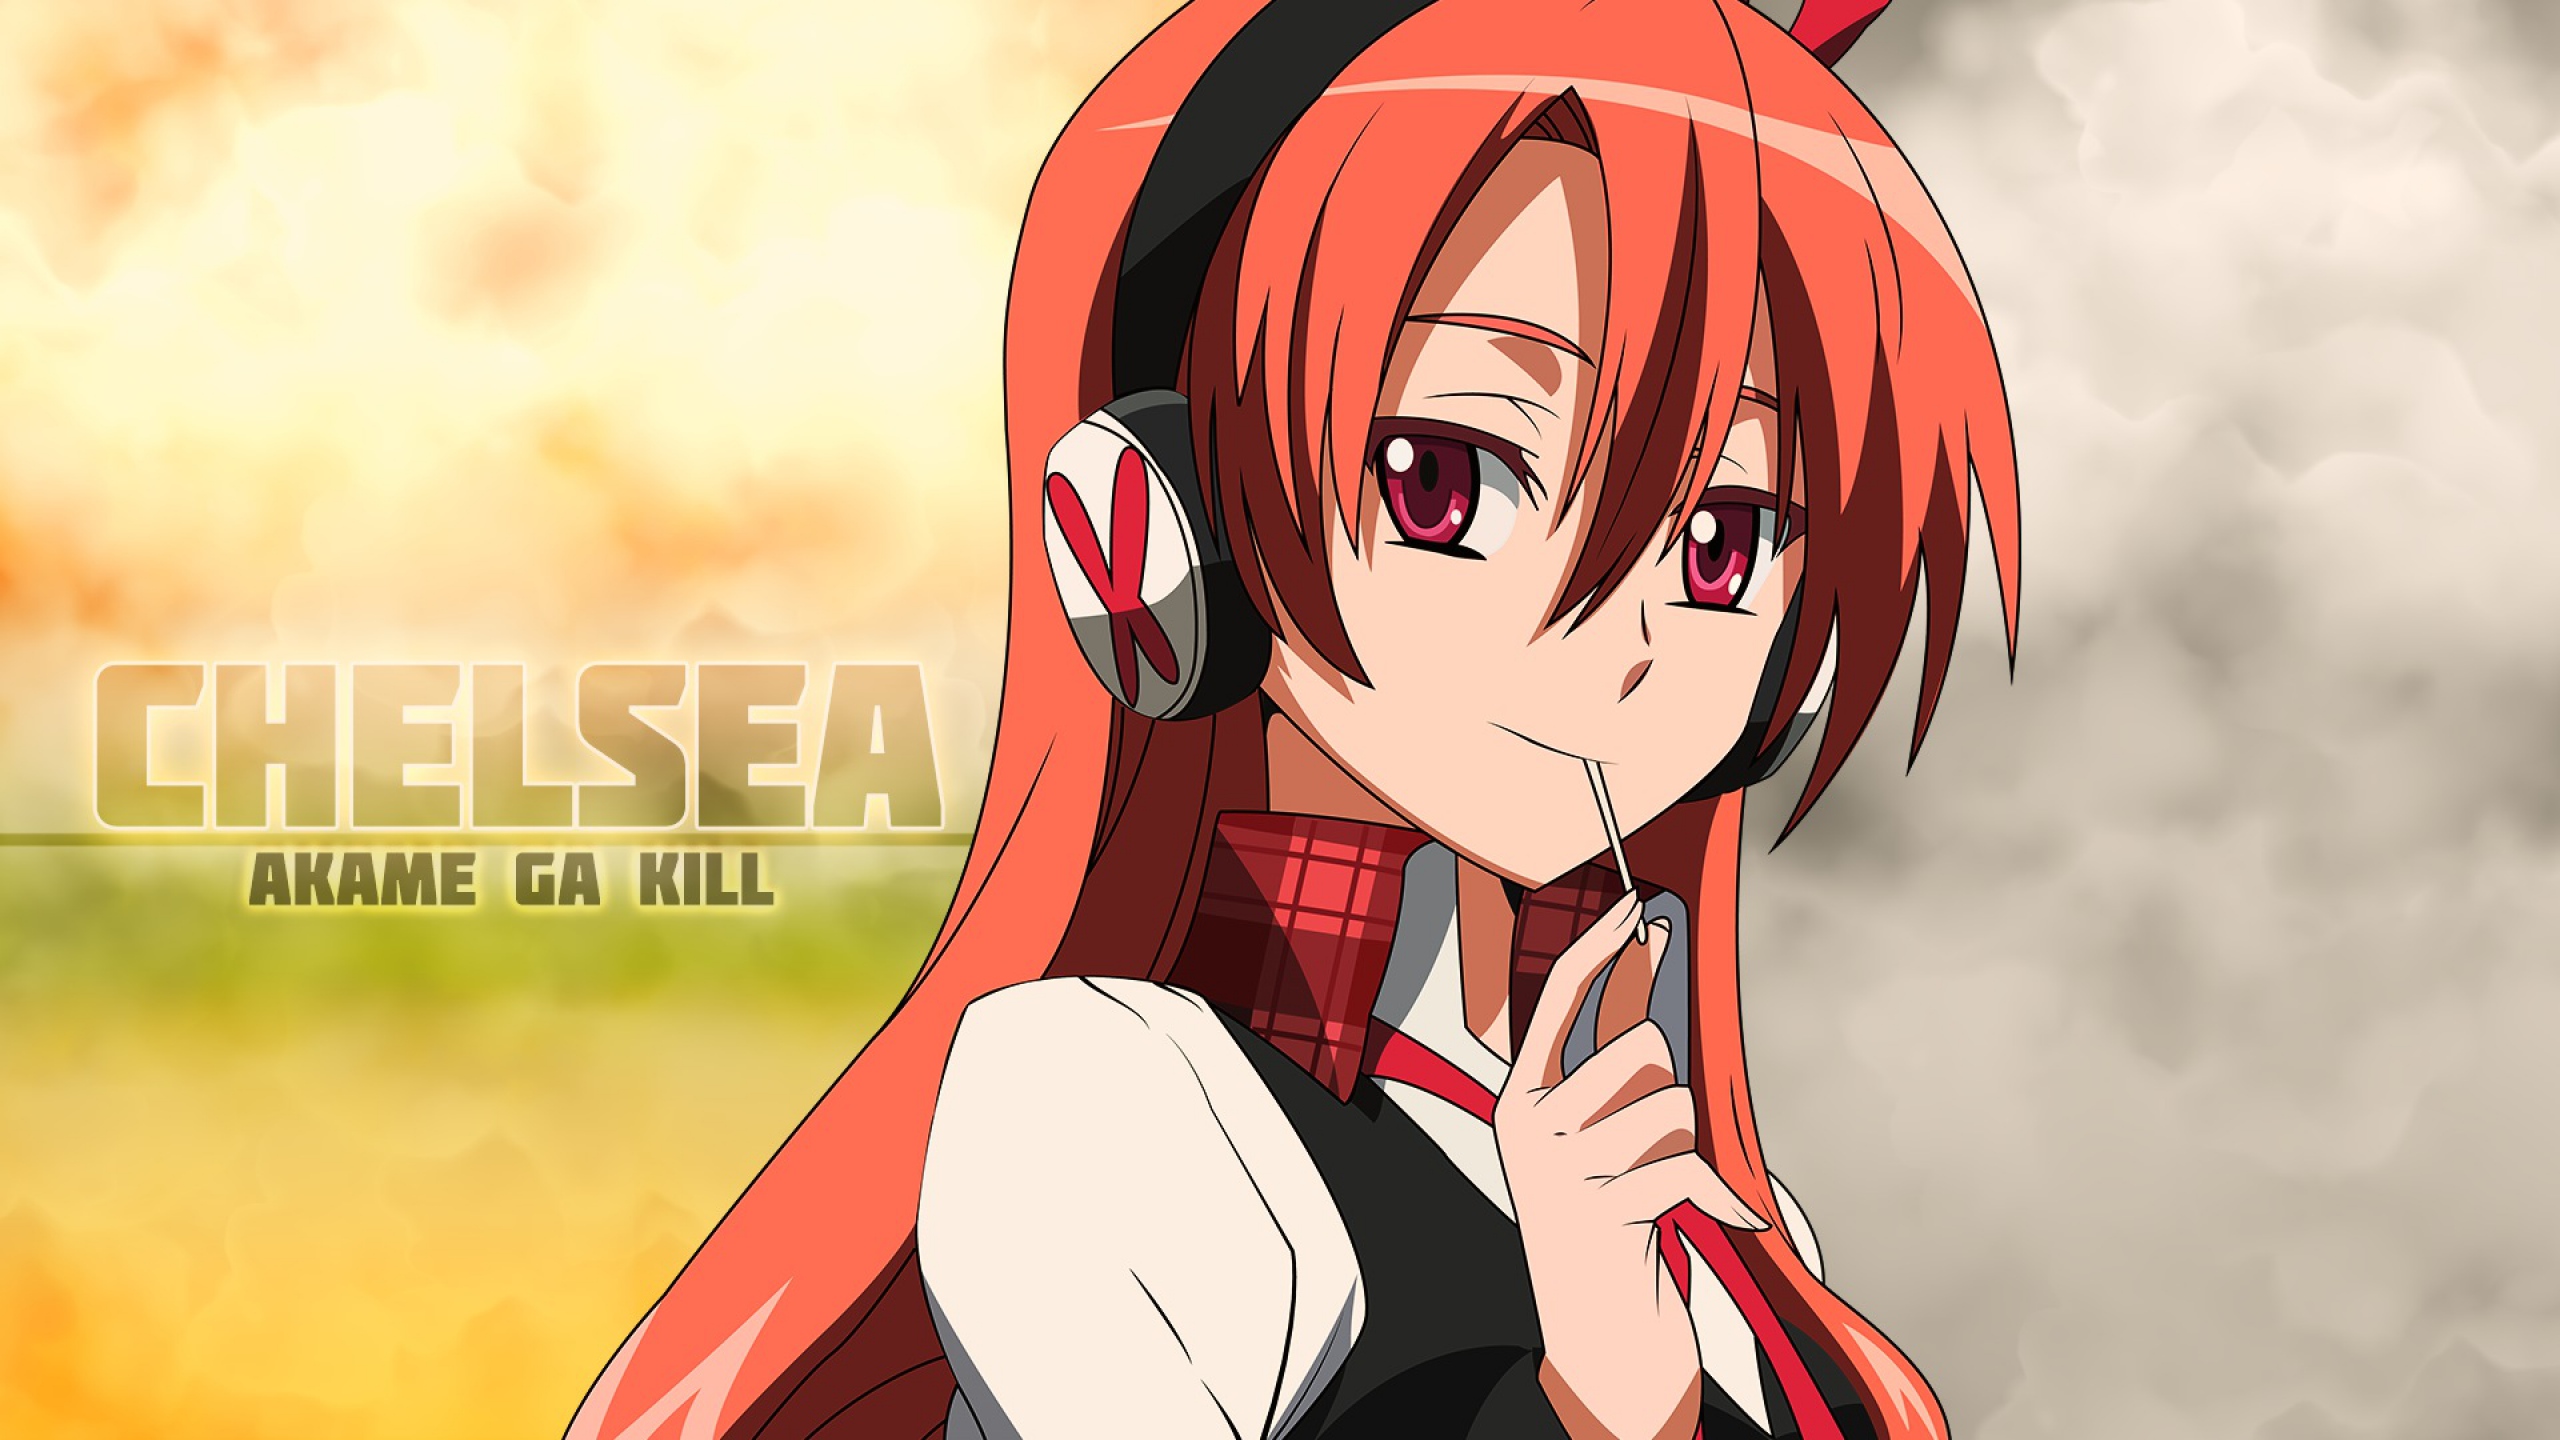 Fondos de pantalla Anime Chelsea de Akame Ga Kill!